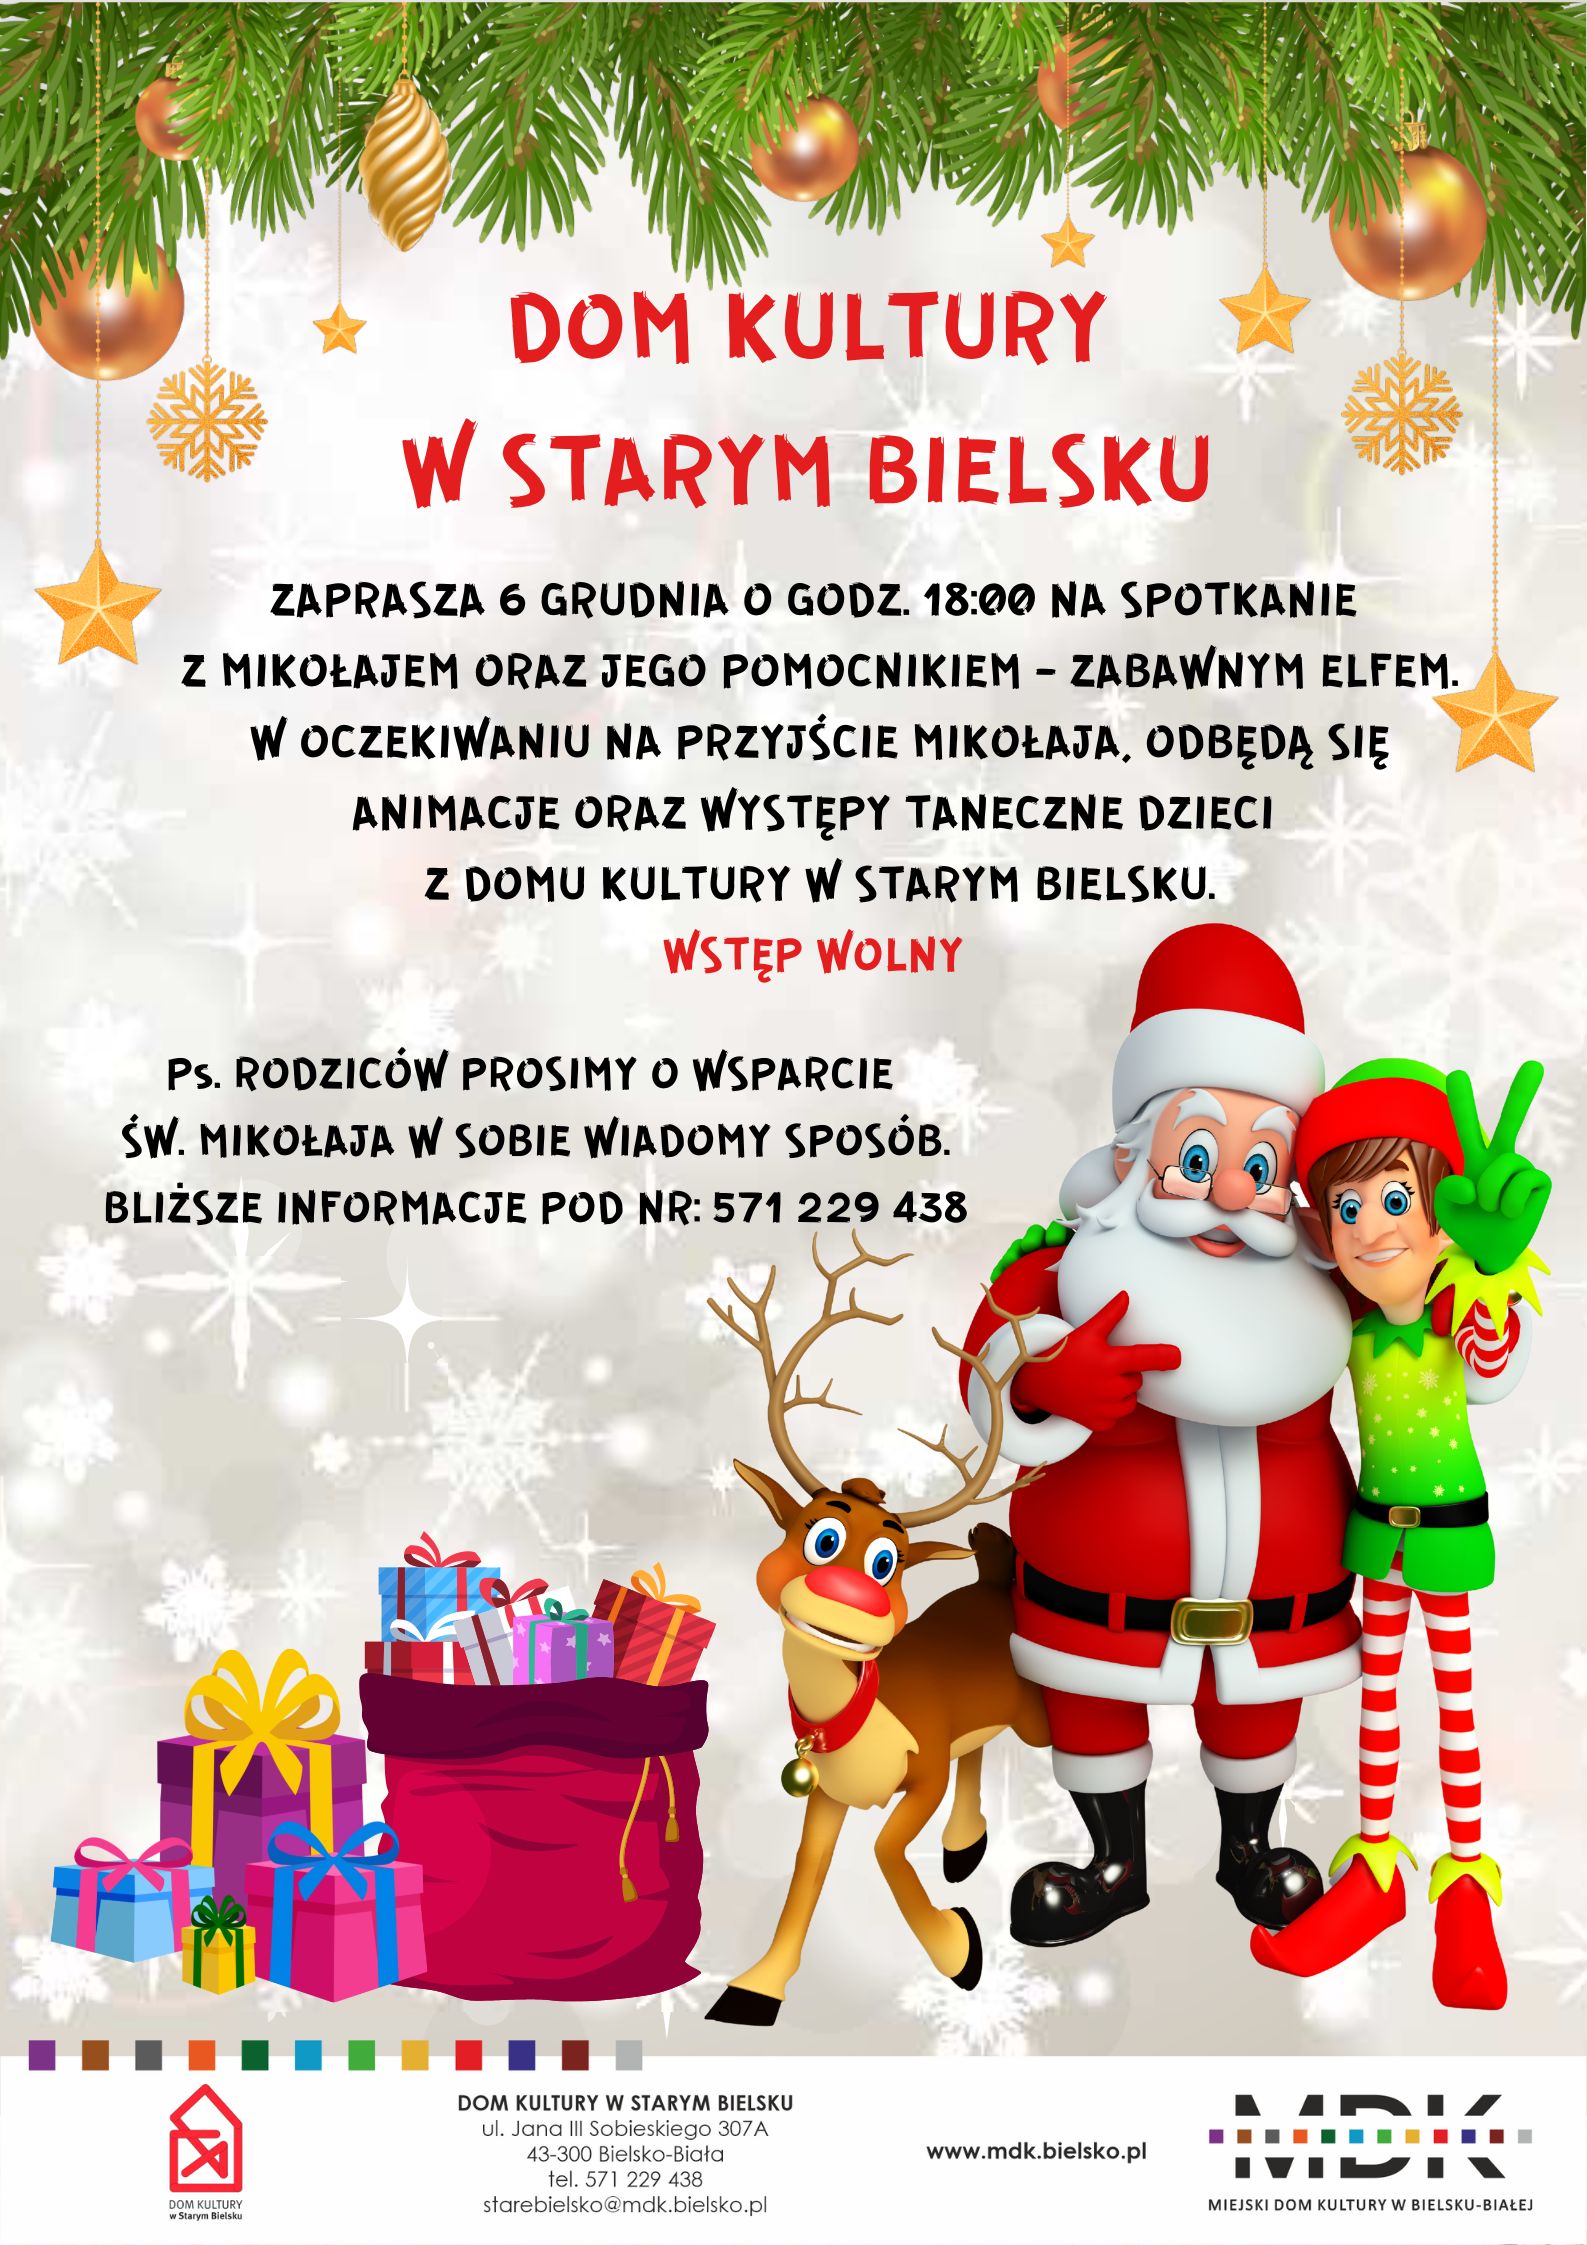  Spotkanie ze Świętym Mikołajem w DK w Satrym Bielsku Na zdjęciu plakat imprezy